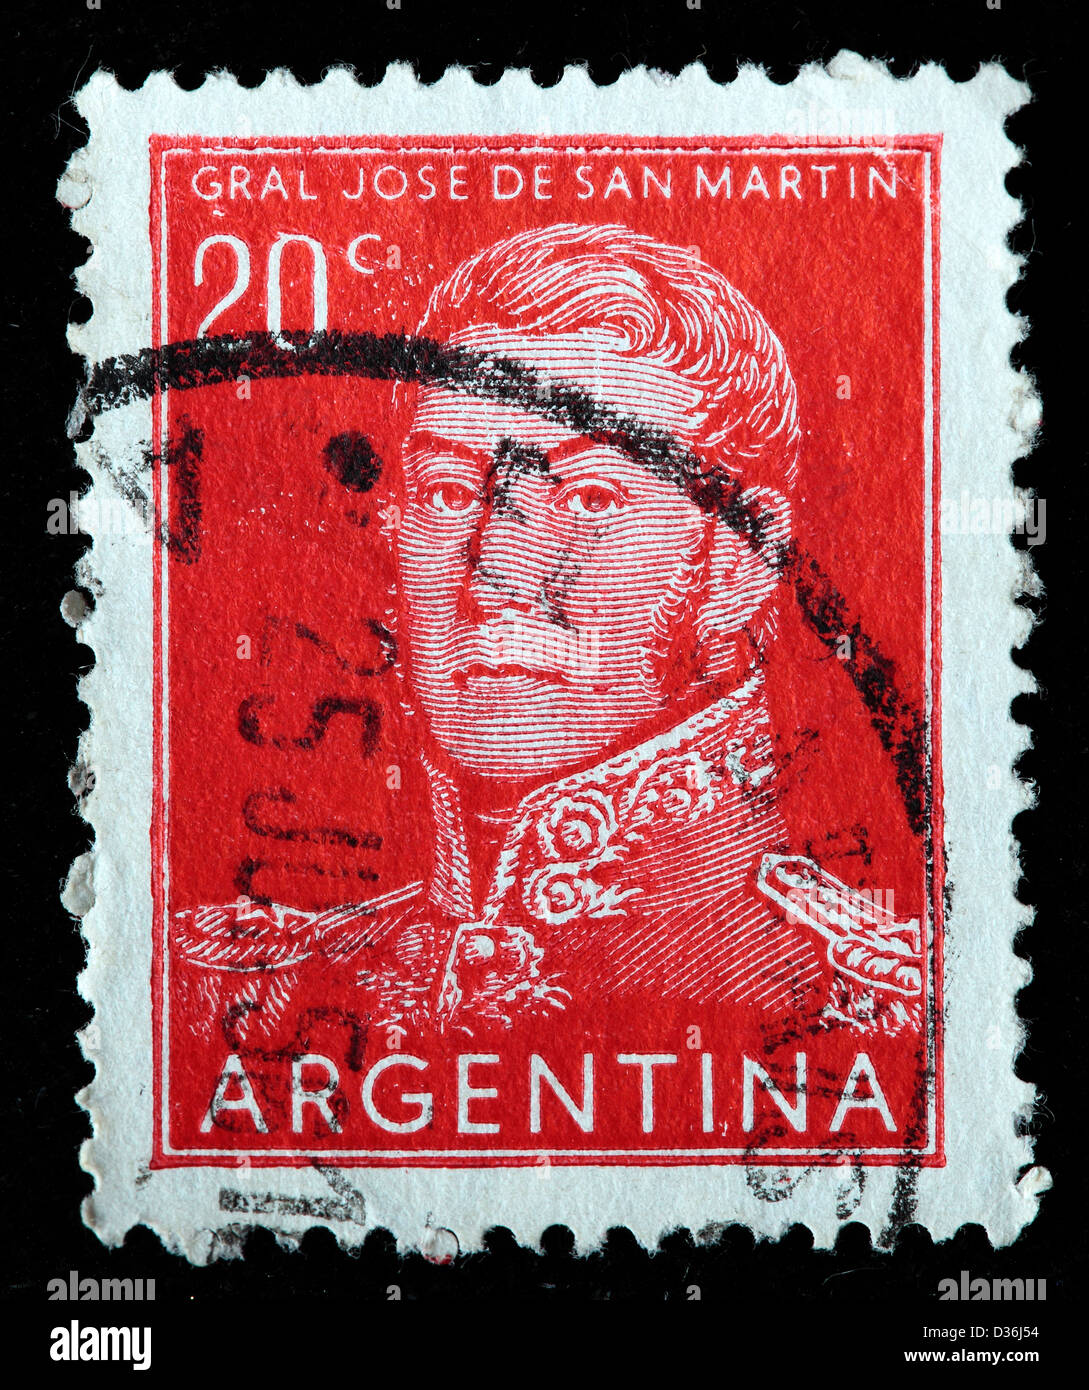 Général José de San Martin, timbre-poste, l'Argentine, 1954 Banque D'Images